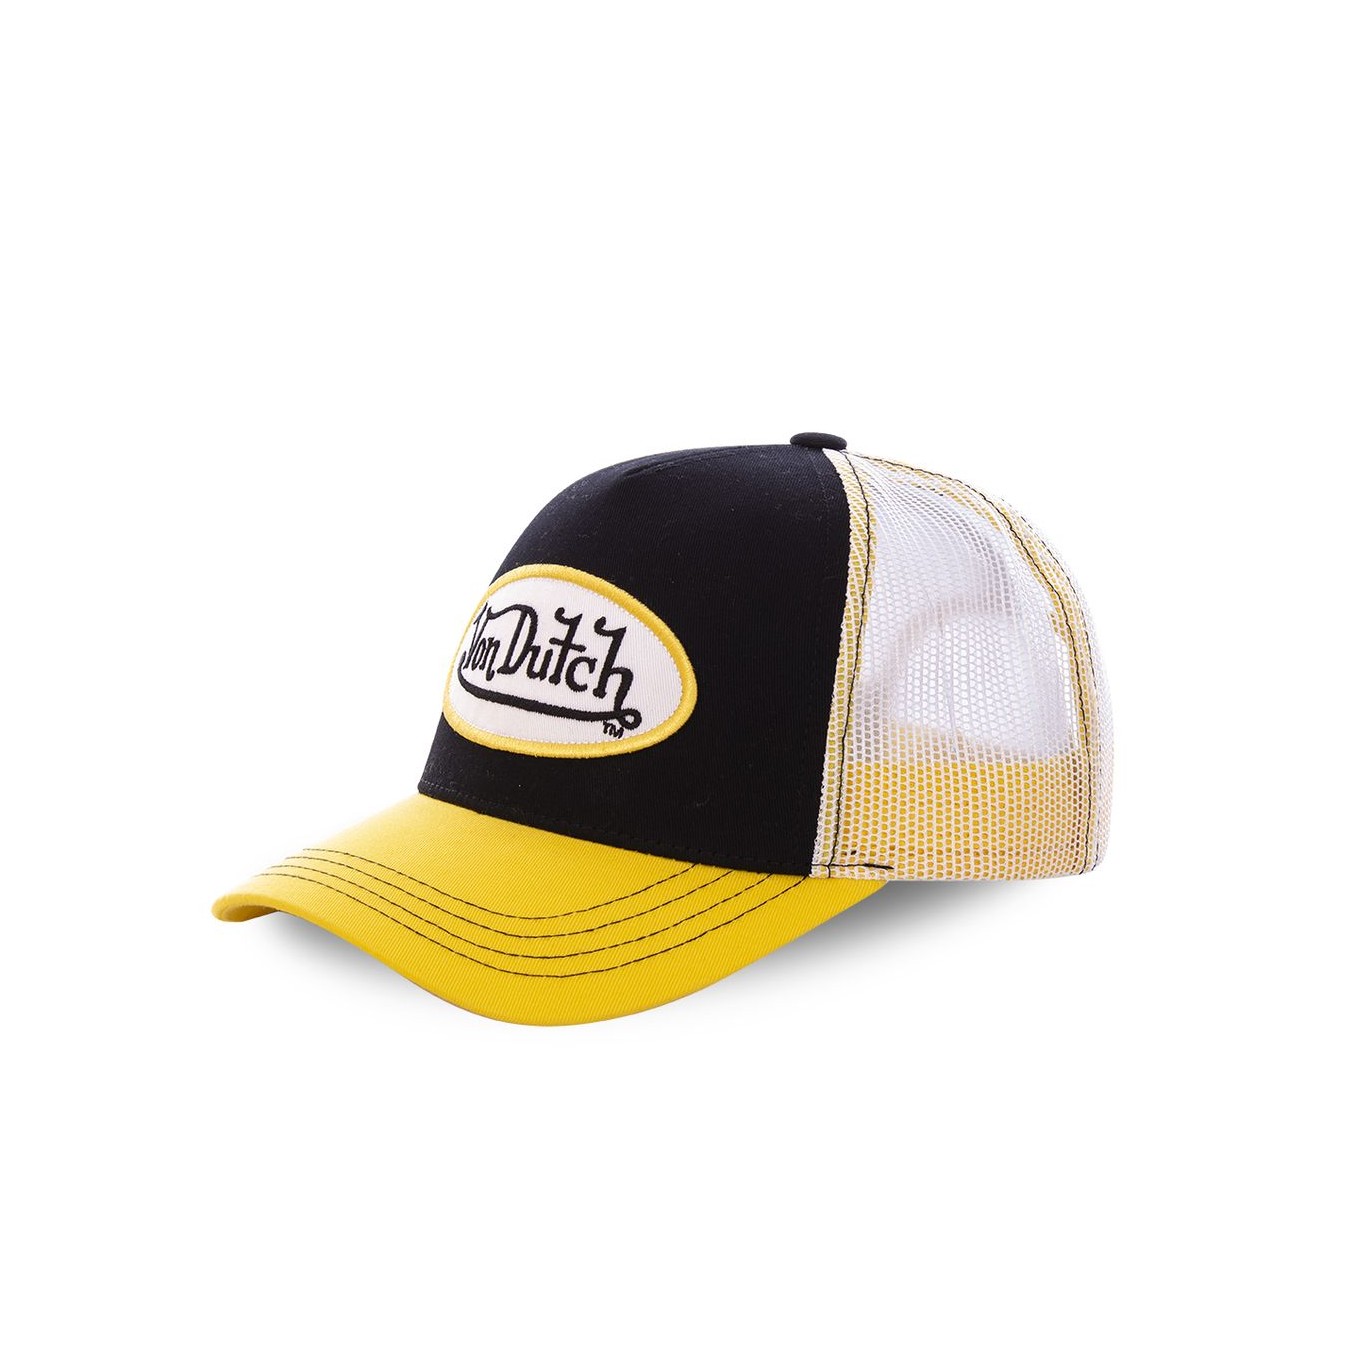 Von Dutch baseball hat in yellow and black - Von Dutch